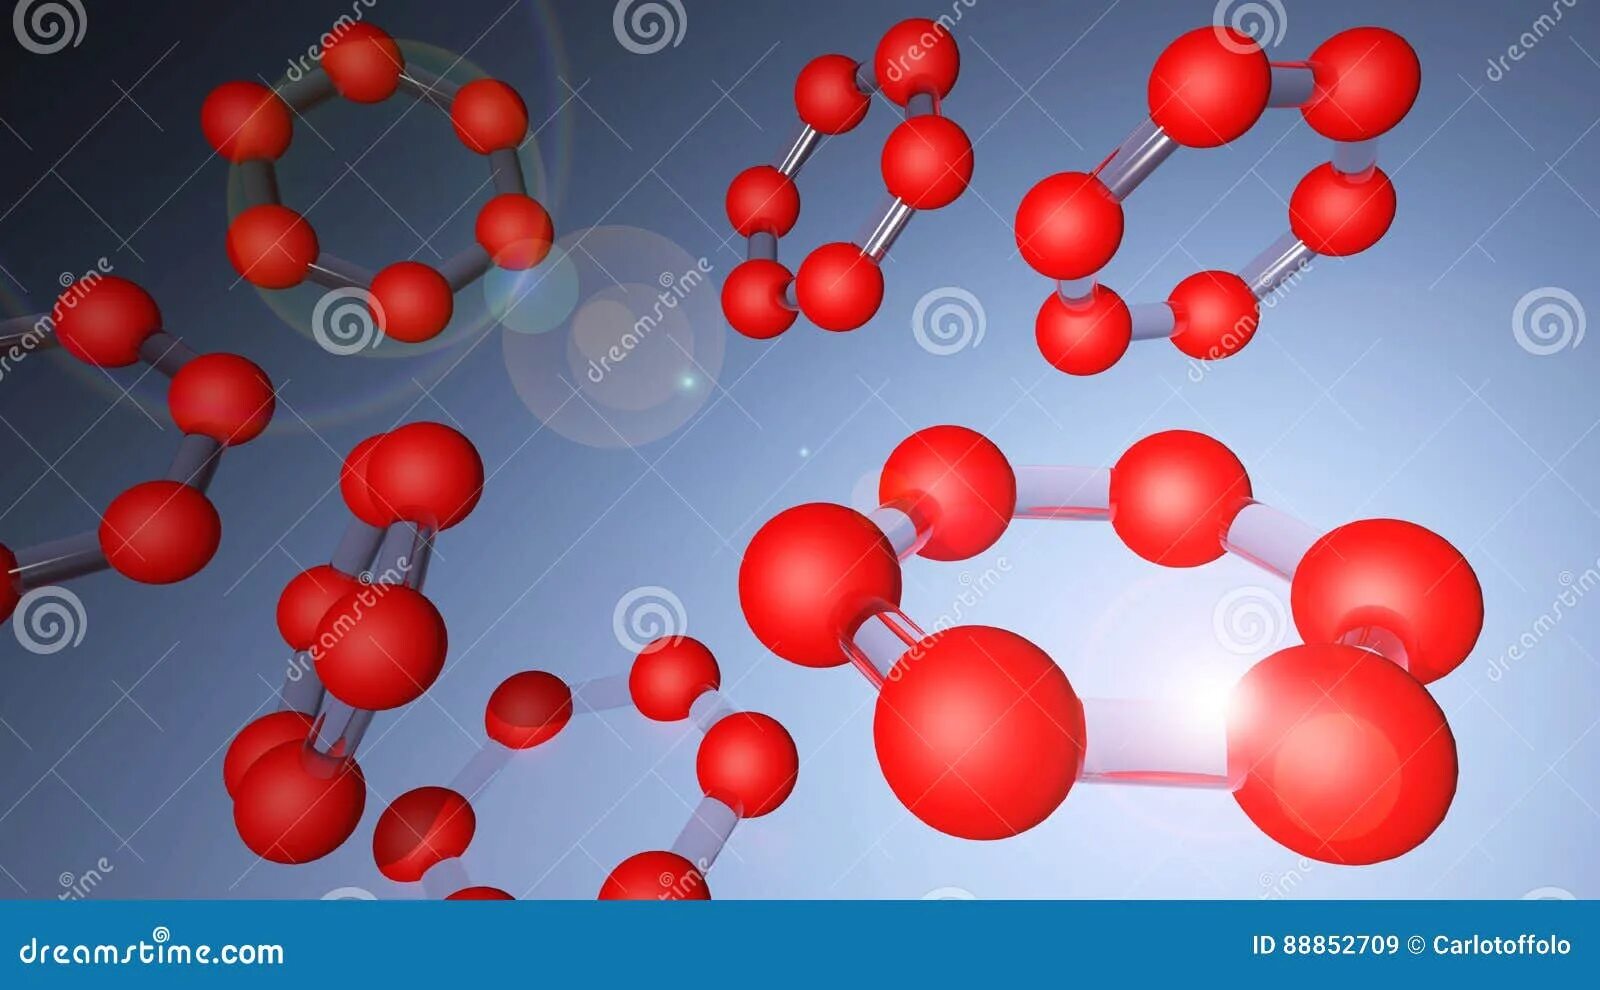 Молекула из 6 атомов